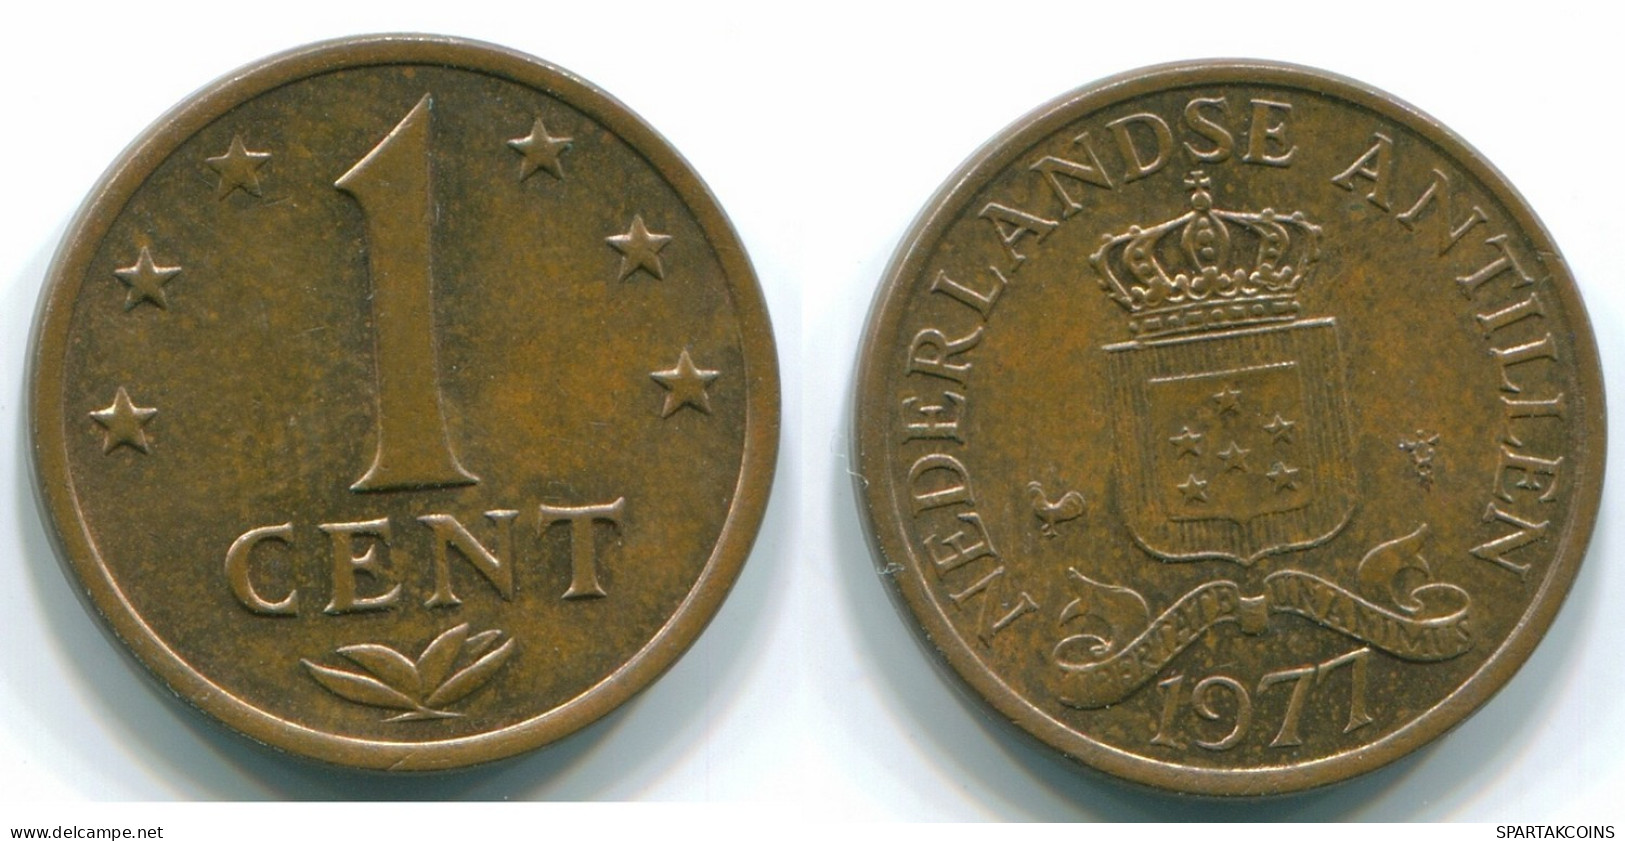 1 CENT 1977 NIEDERLÄNDISCHE ANTILLEN Bronze Koloniale Münze #S10713.D.A - Niederländische Antillen